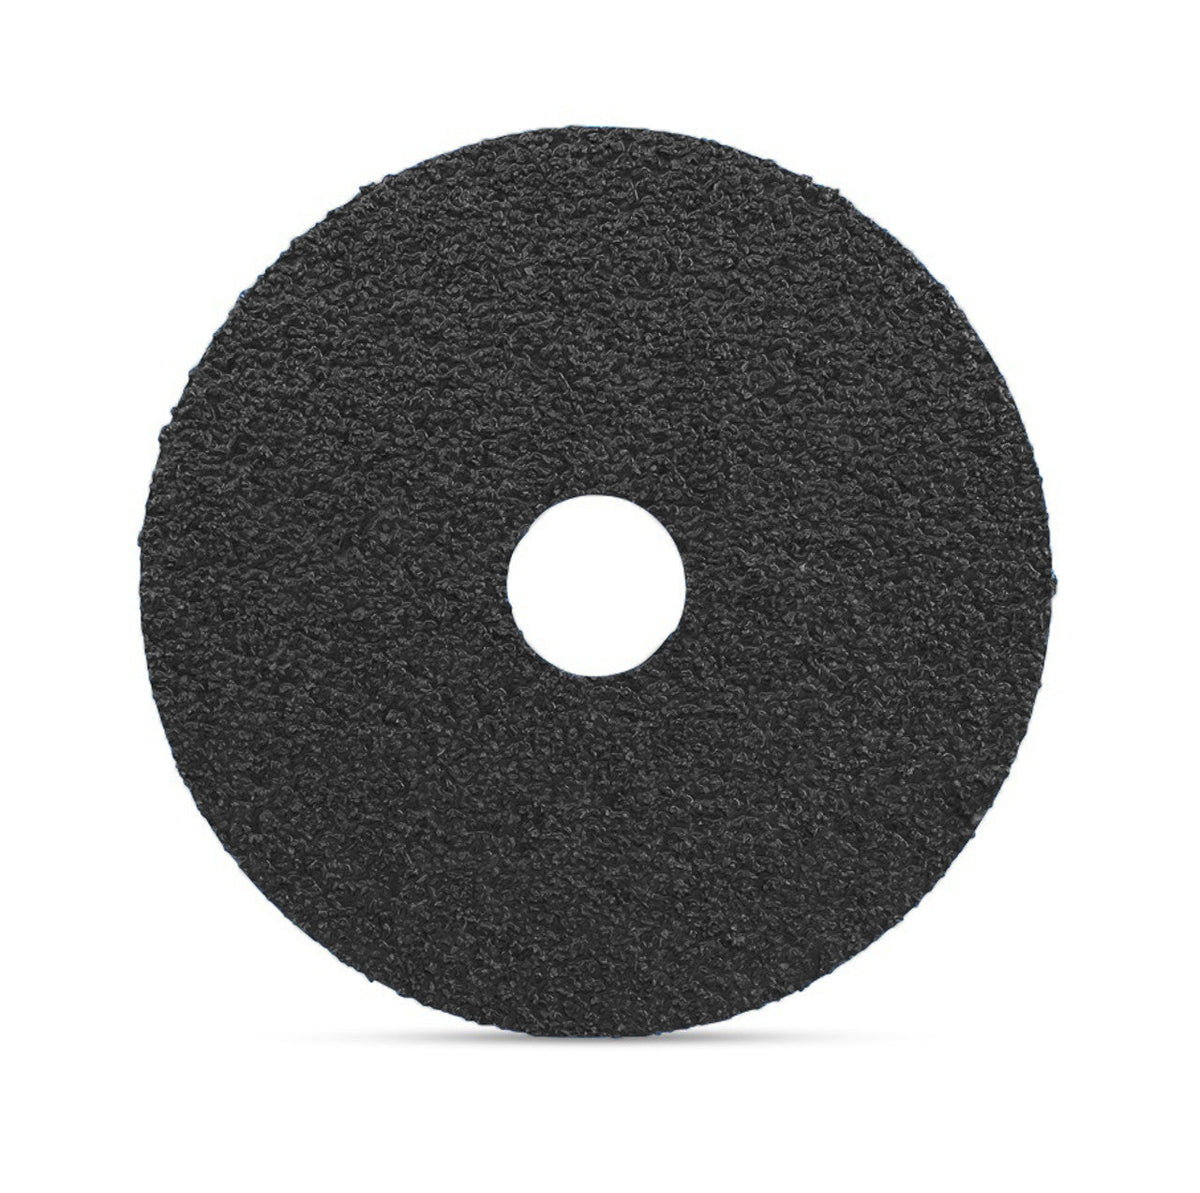 4-1/2" x 7/8" Silicon Carbide Resin Fiber Sanding Discs